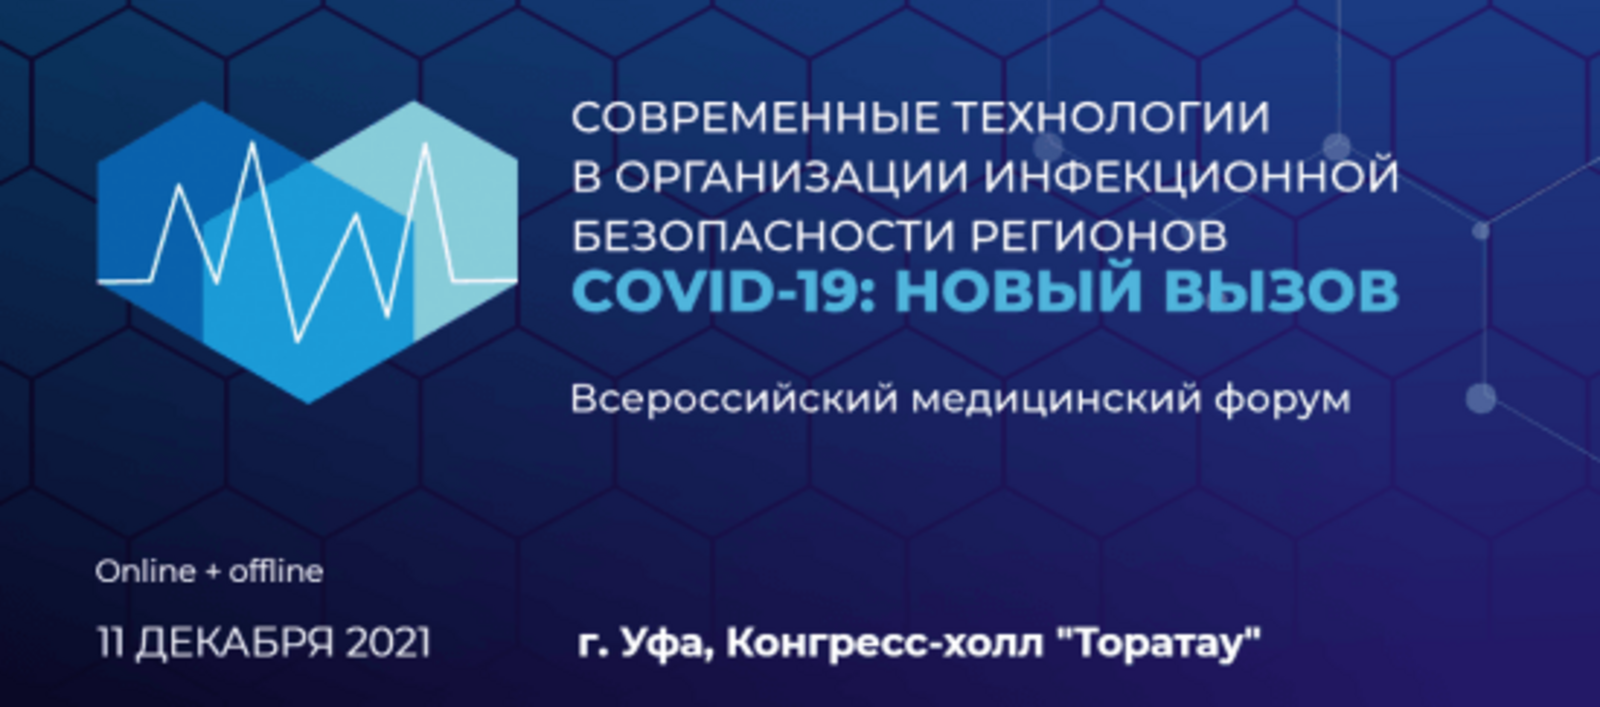 Всероссийский медицинский форум «COVID-19: новый вызов» пройдёт в Уфе 11 декабря